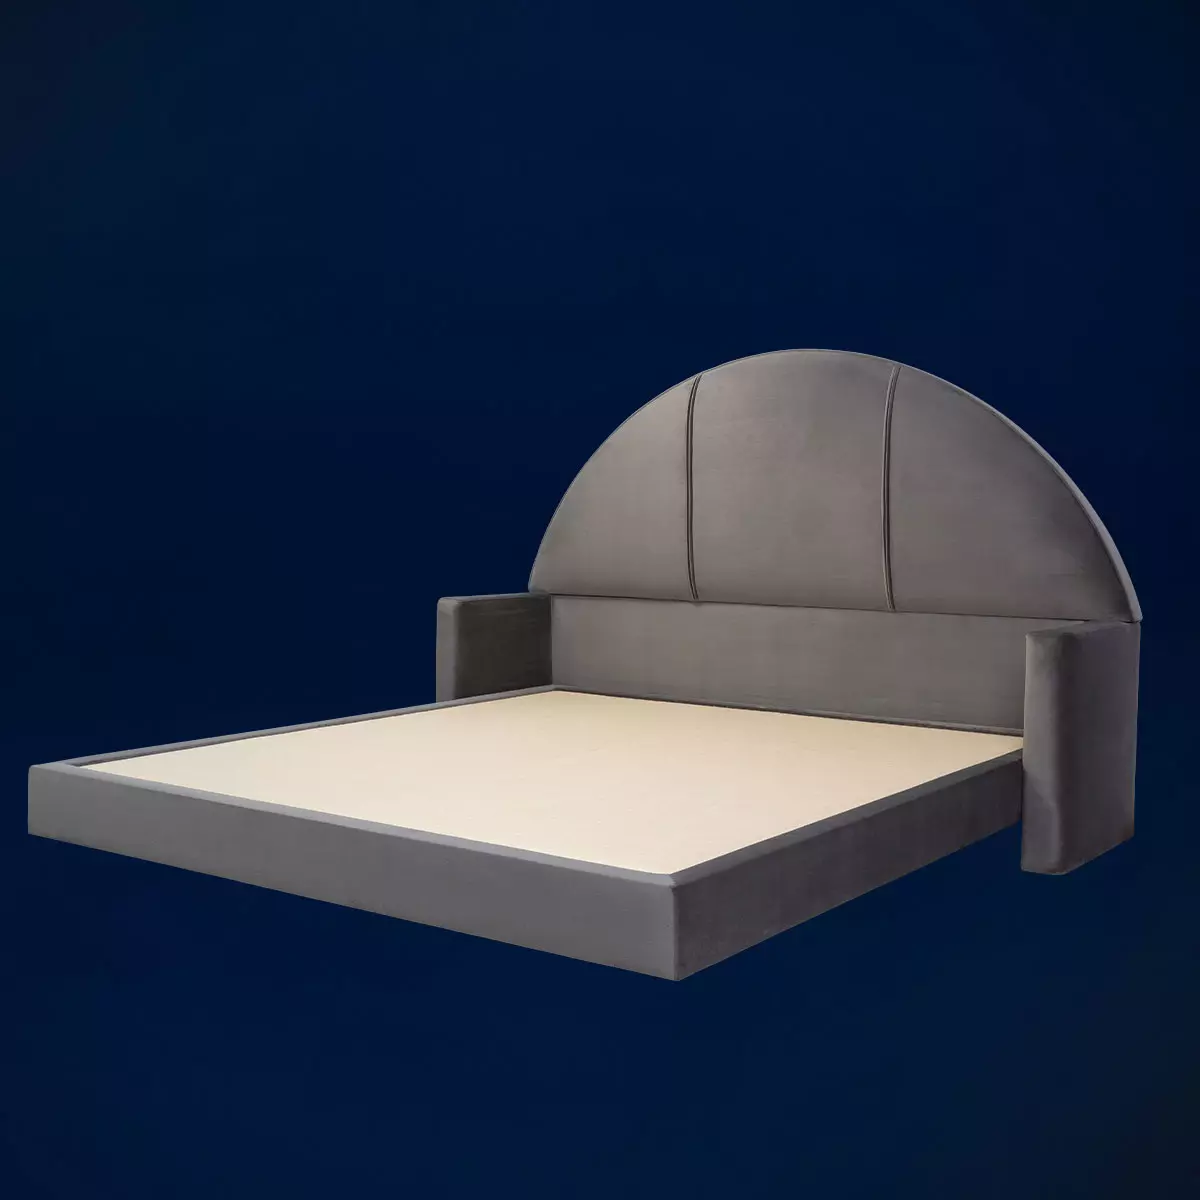 Bäsk Set Circle Başlık | Baza Karyola Başlık Takımı Özel Tasarım Yatak Odası Mobilyası Modern Lüks